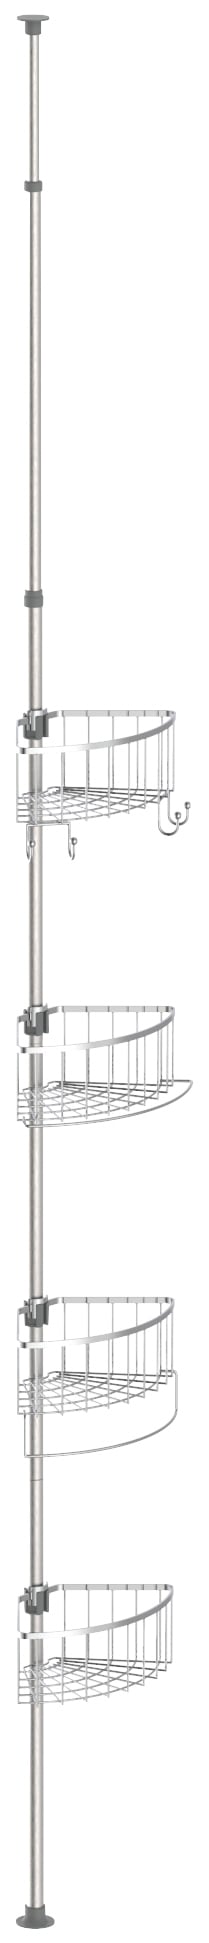 Duschregal »Teleskop«, höhenverstellbar, 4 abnehmbare Körbe, Edelstahl, leichte Montage